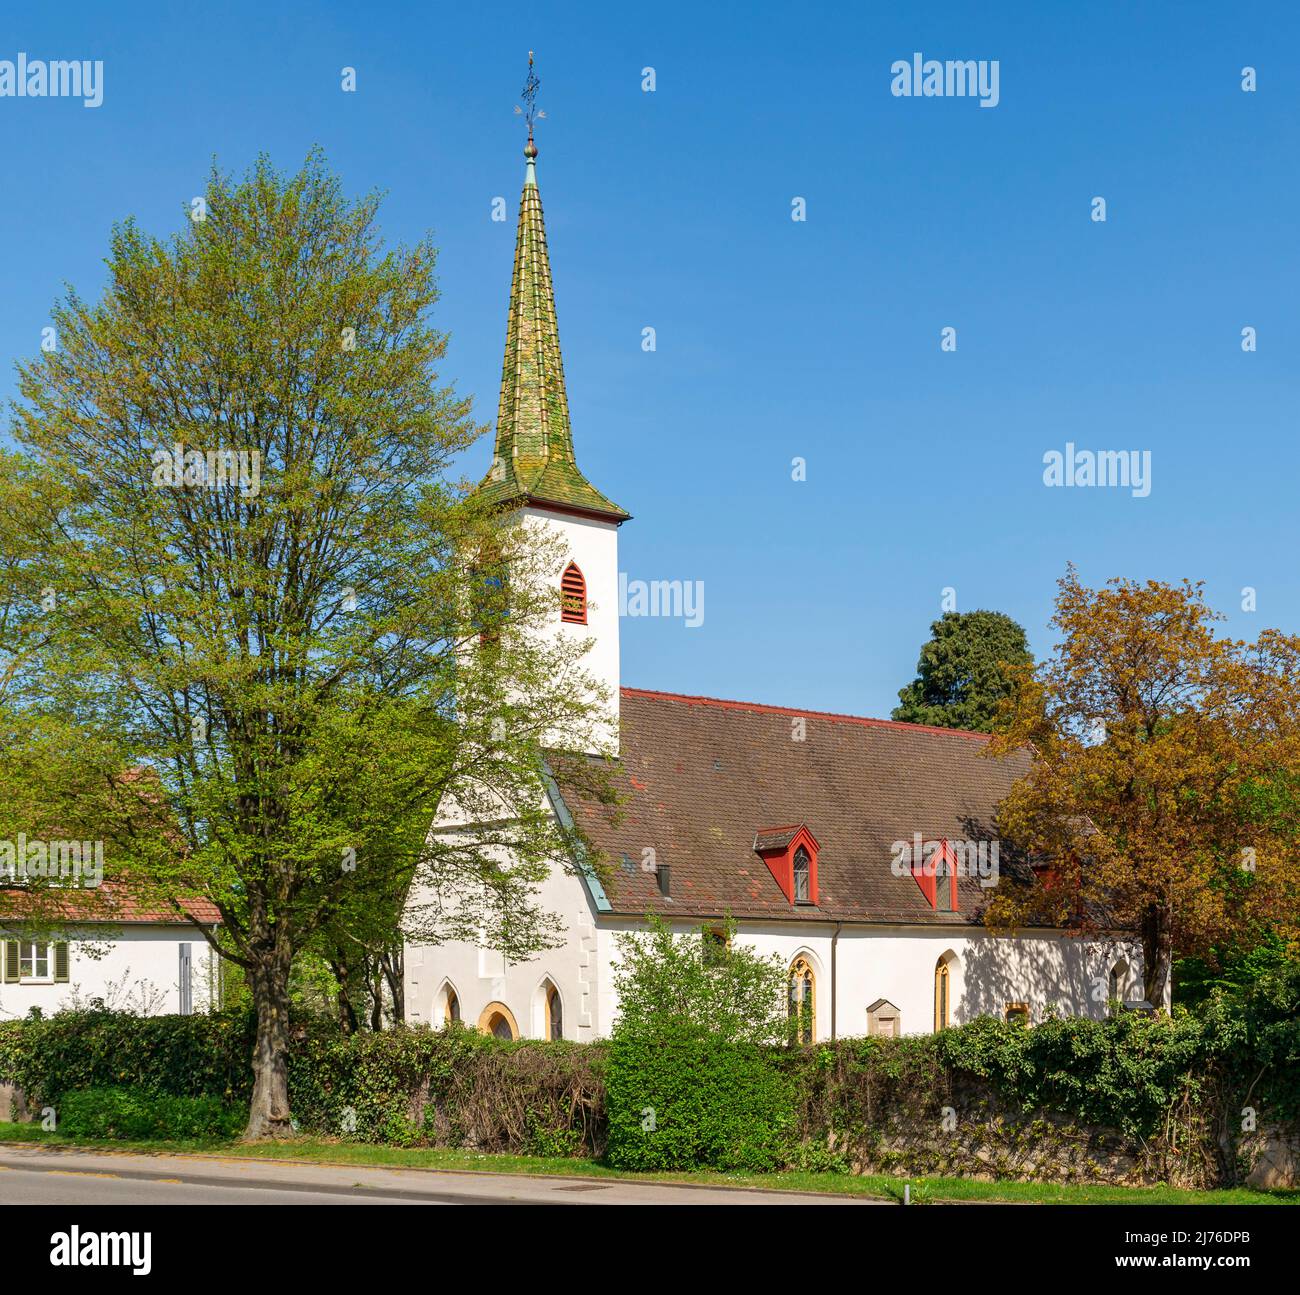 Germania, Nürtingen, chiesa protestante, torre della chiesa costruita nel 1624 da Heinrich Schickhardt. Foto Stock